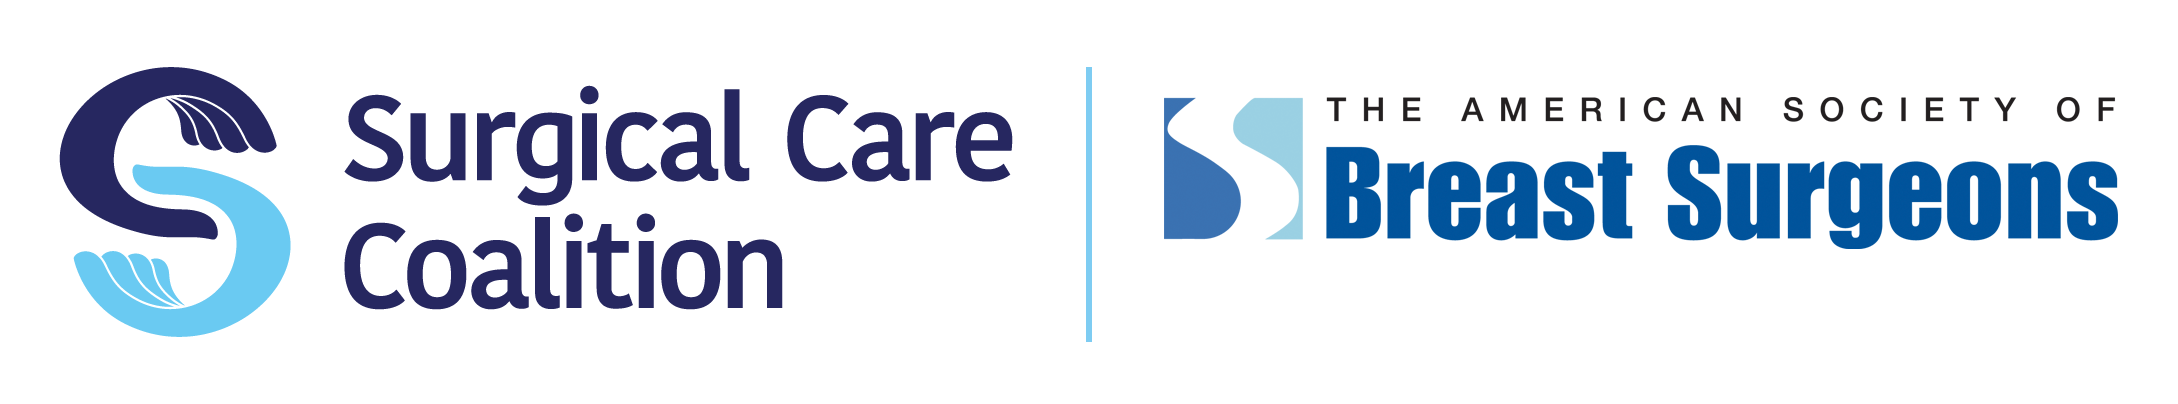 Surgical Care Coalition & ASBrS Logos